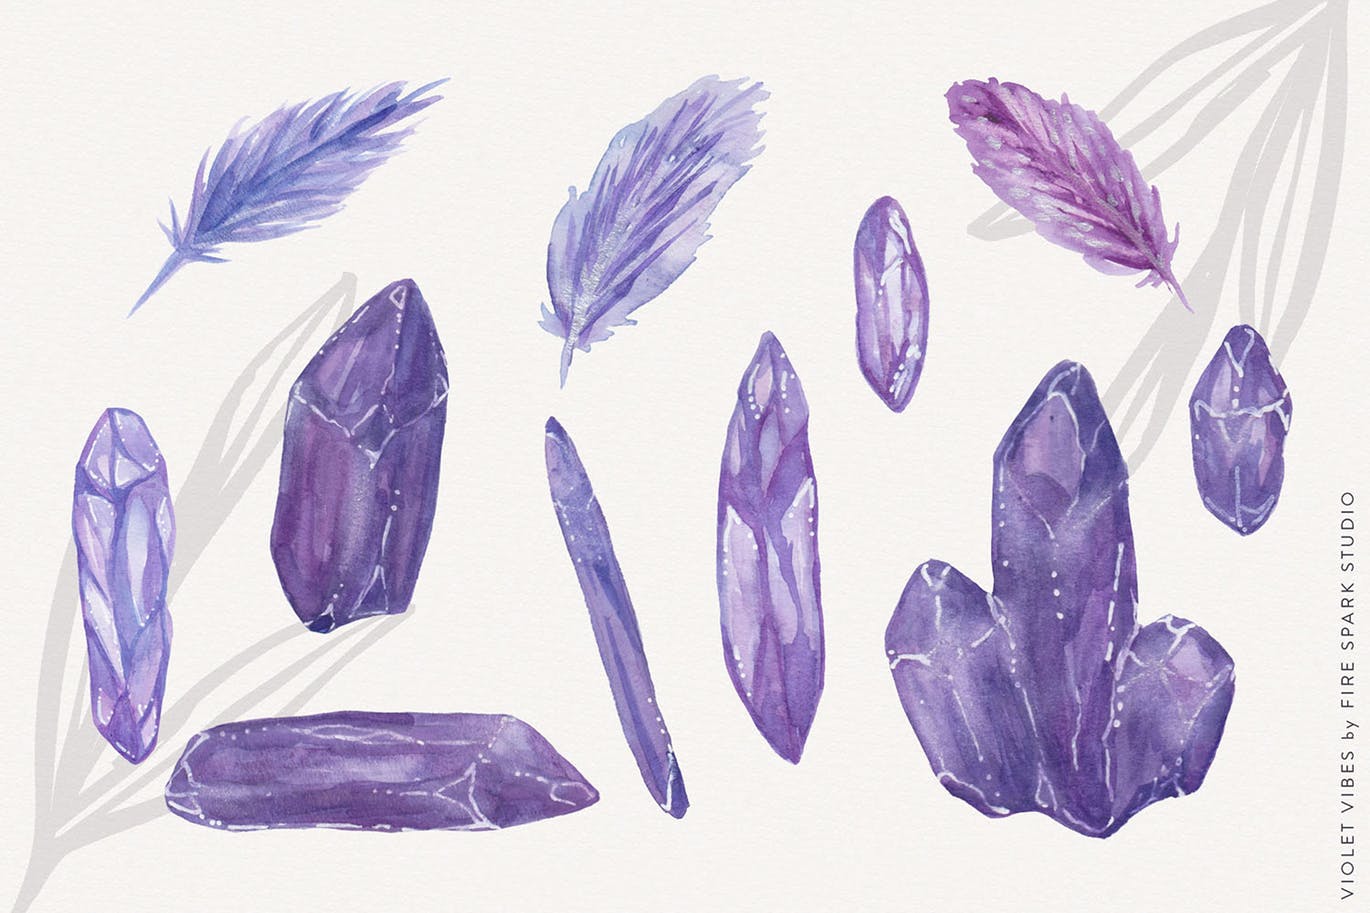 紫罗兰色时尚水彩手绘设计套件 Violet Vibes Graphic Art Kit插图(2)